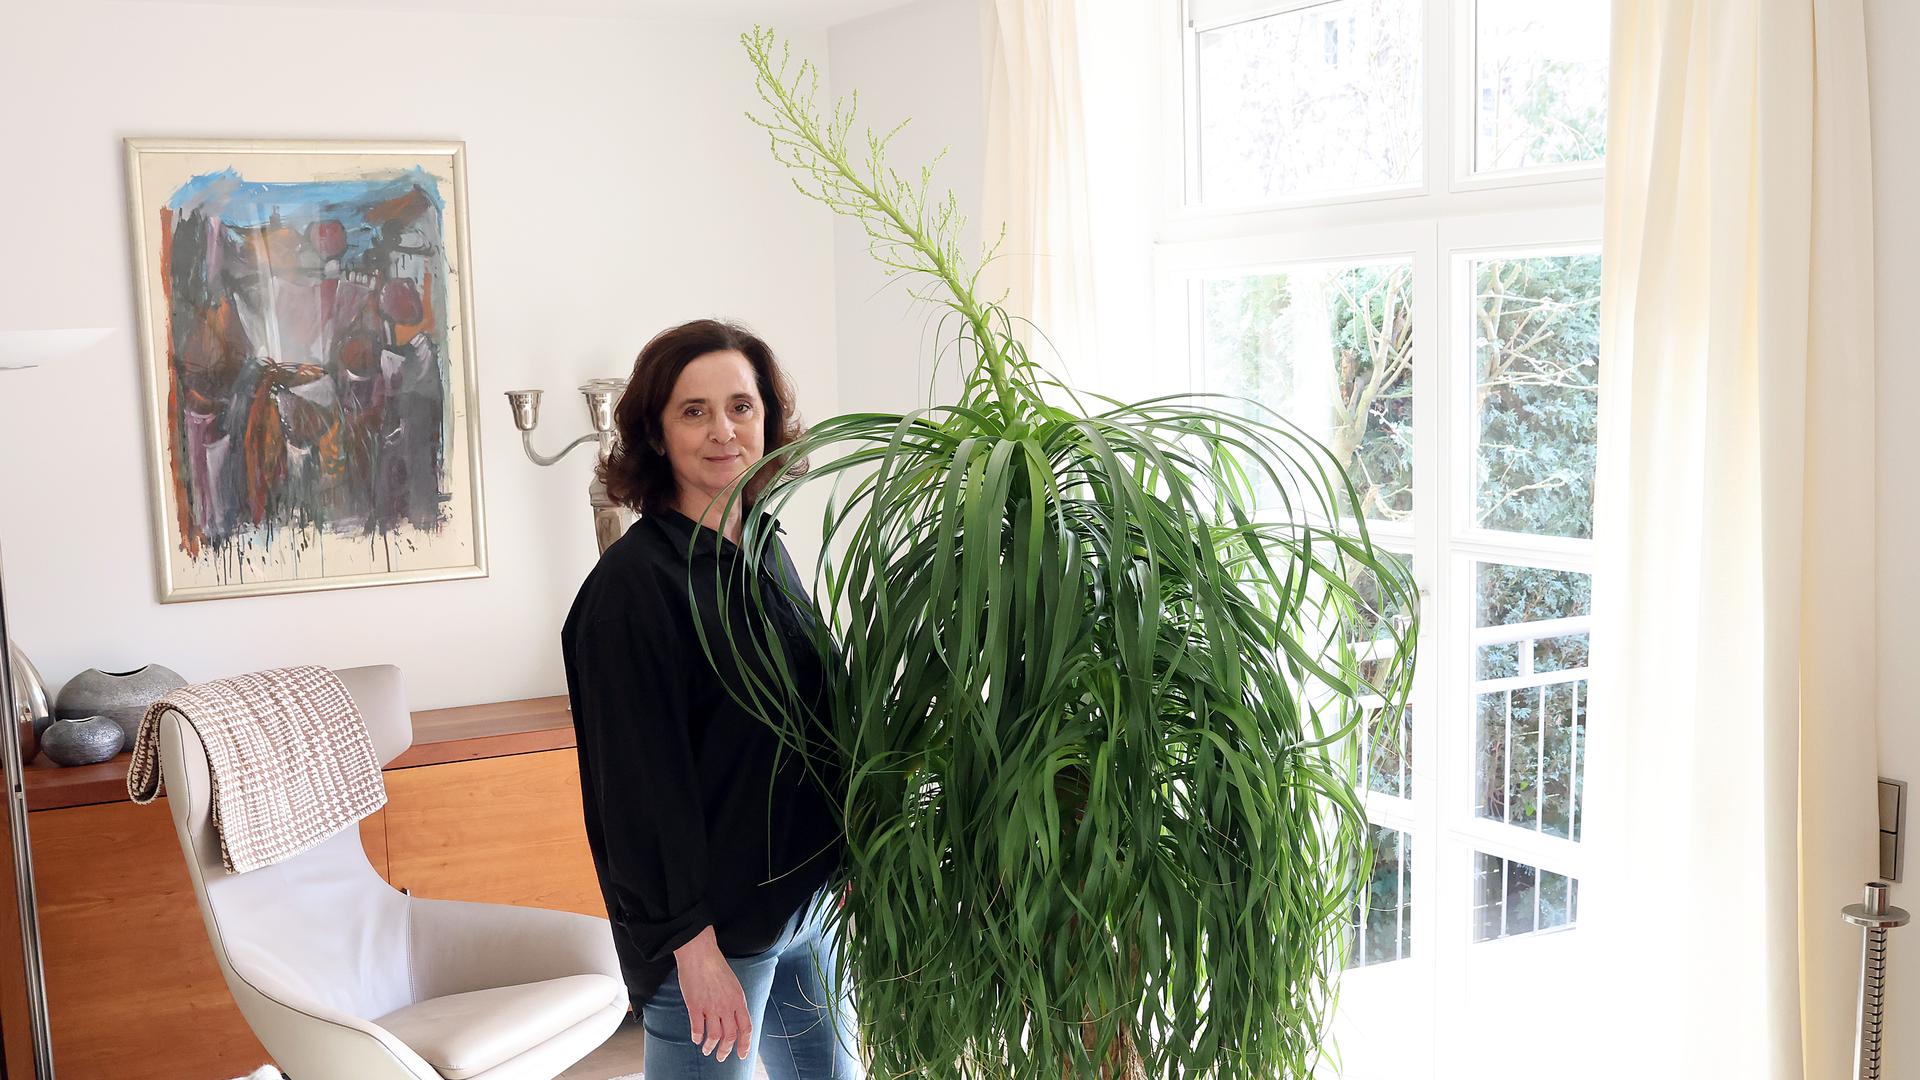 Eine Frau steht neben einer ihre Größe überragenden, grünblättrigen Pflanze.